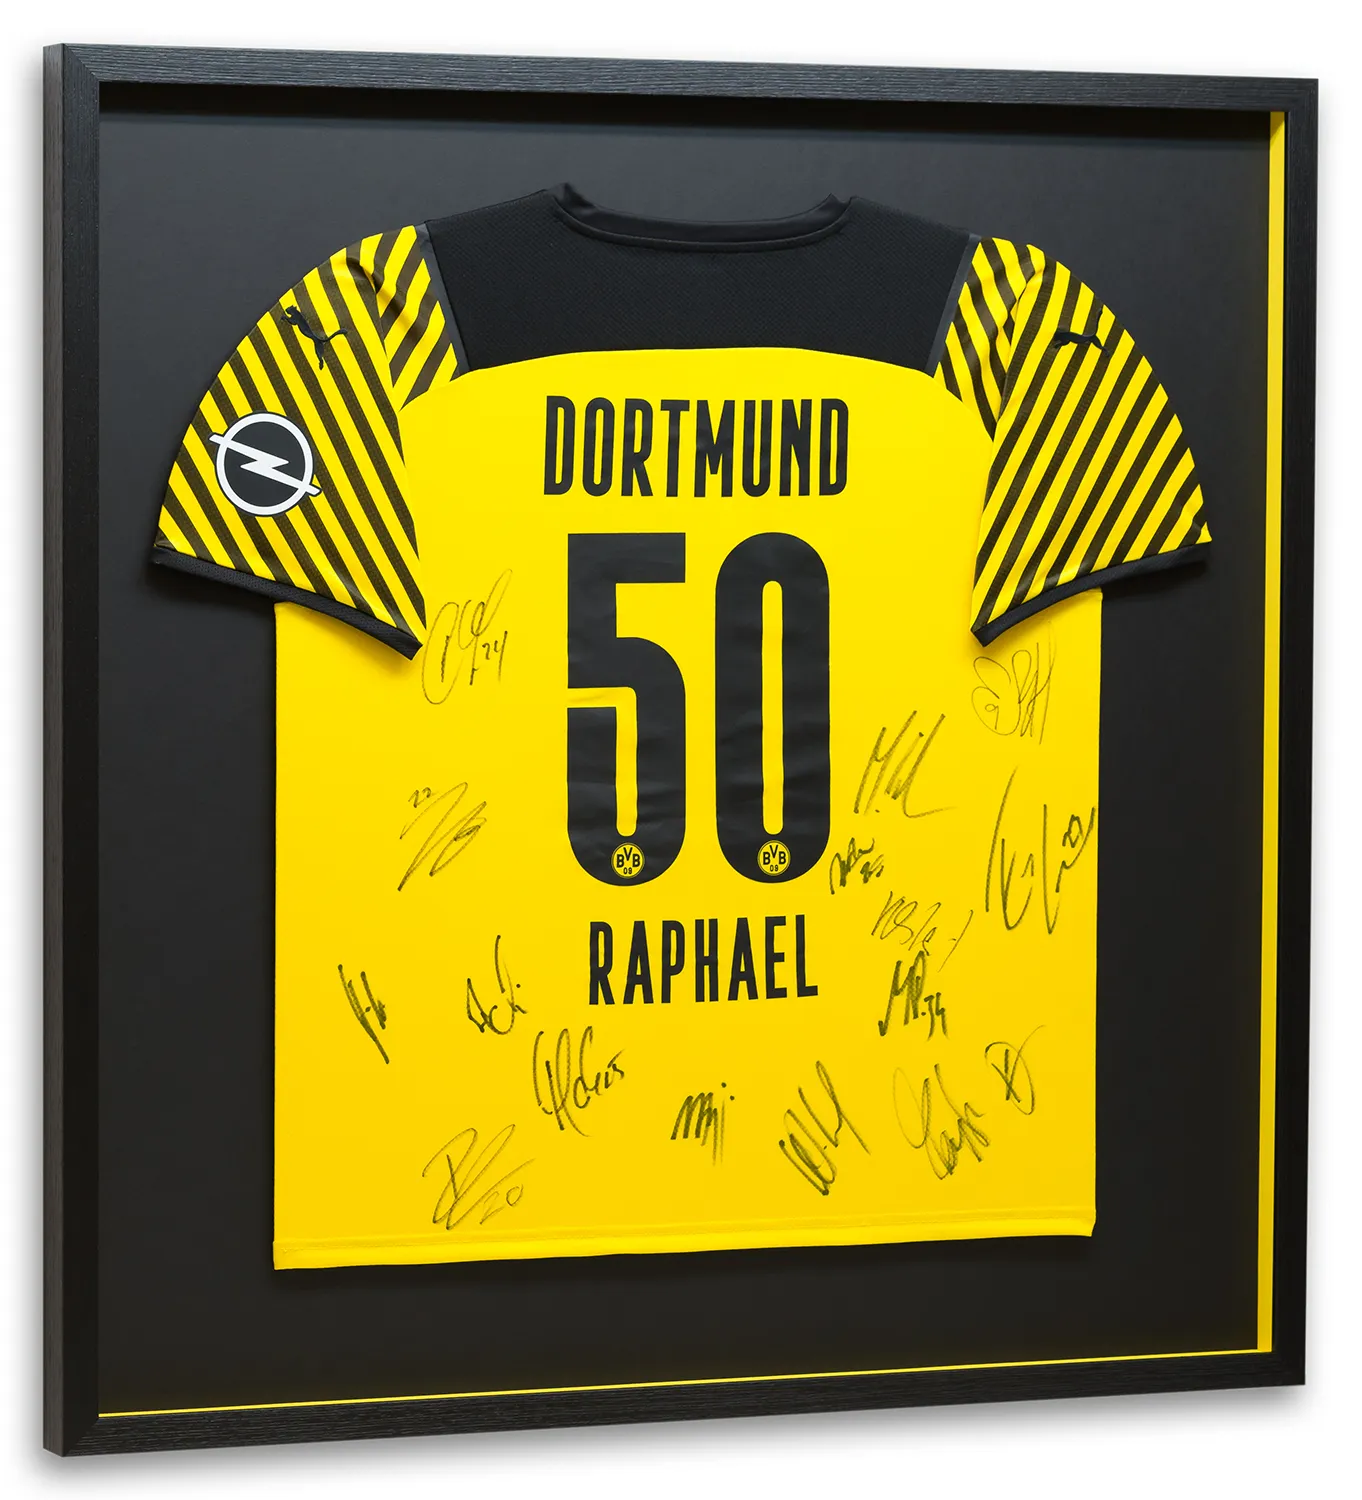 Trikotrahmen mit Dortmund Fußball-Trikot. Einrahmung präsentiert die unterschriebene Rückseite des Trikots